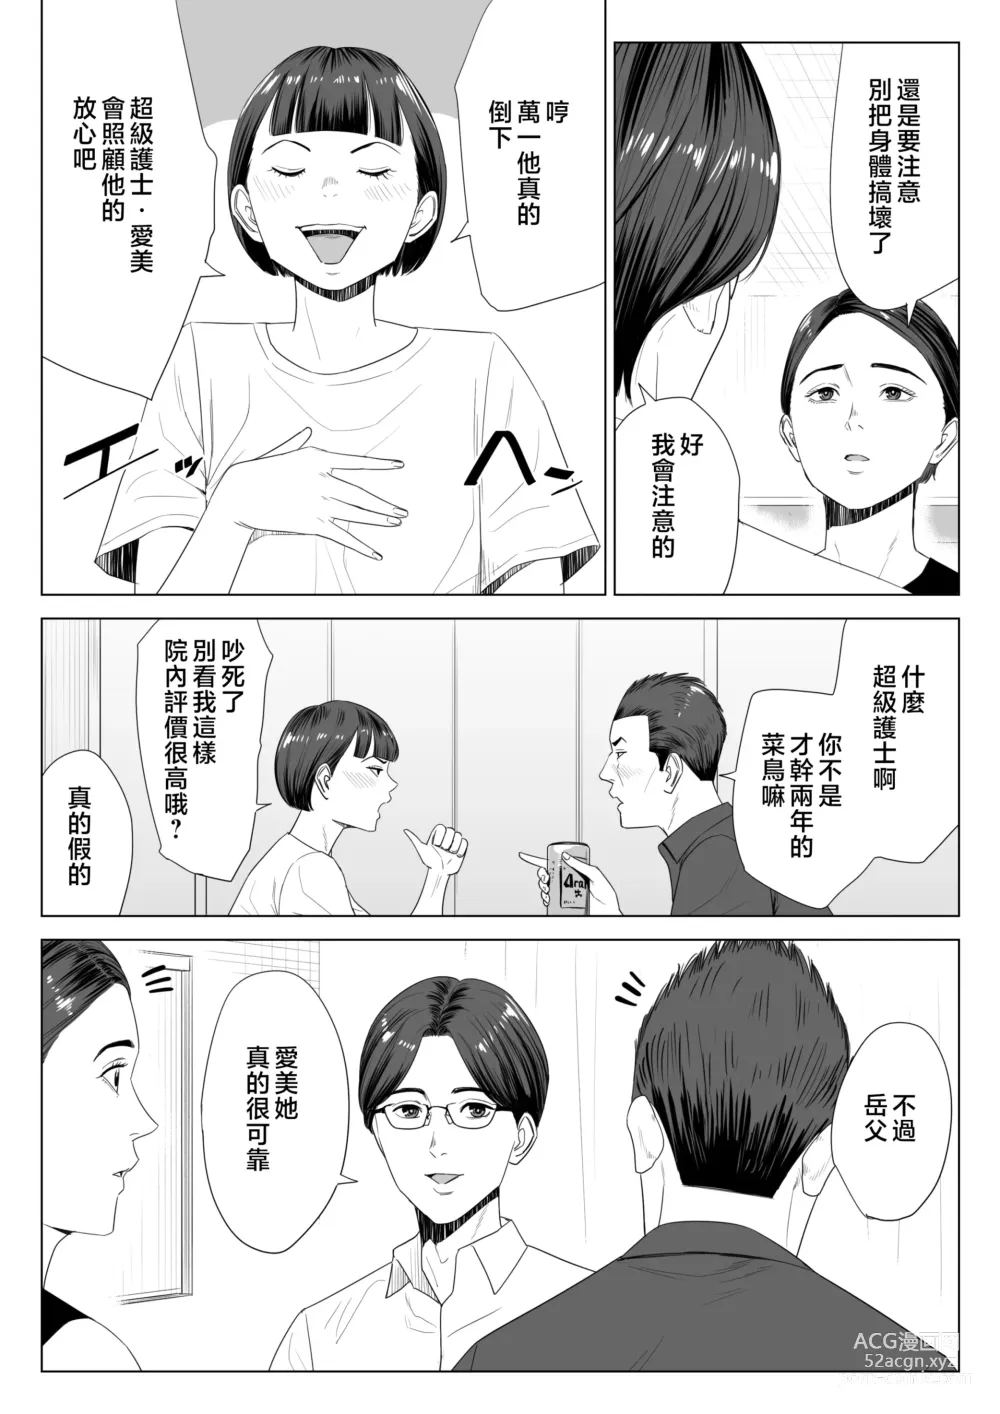 Page 5 of doujinshi Gibo no Tsukaeru Karada.